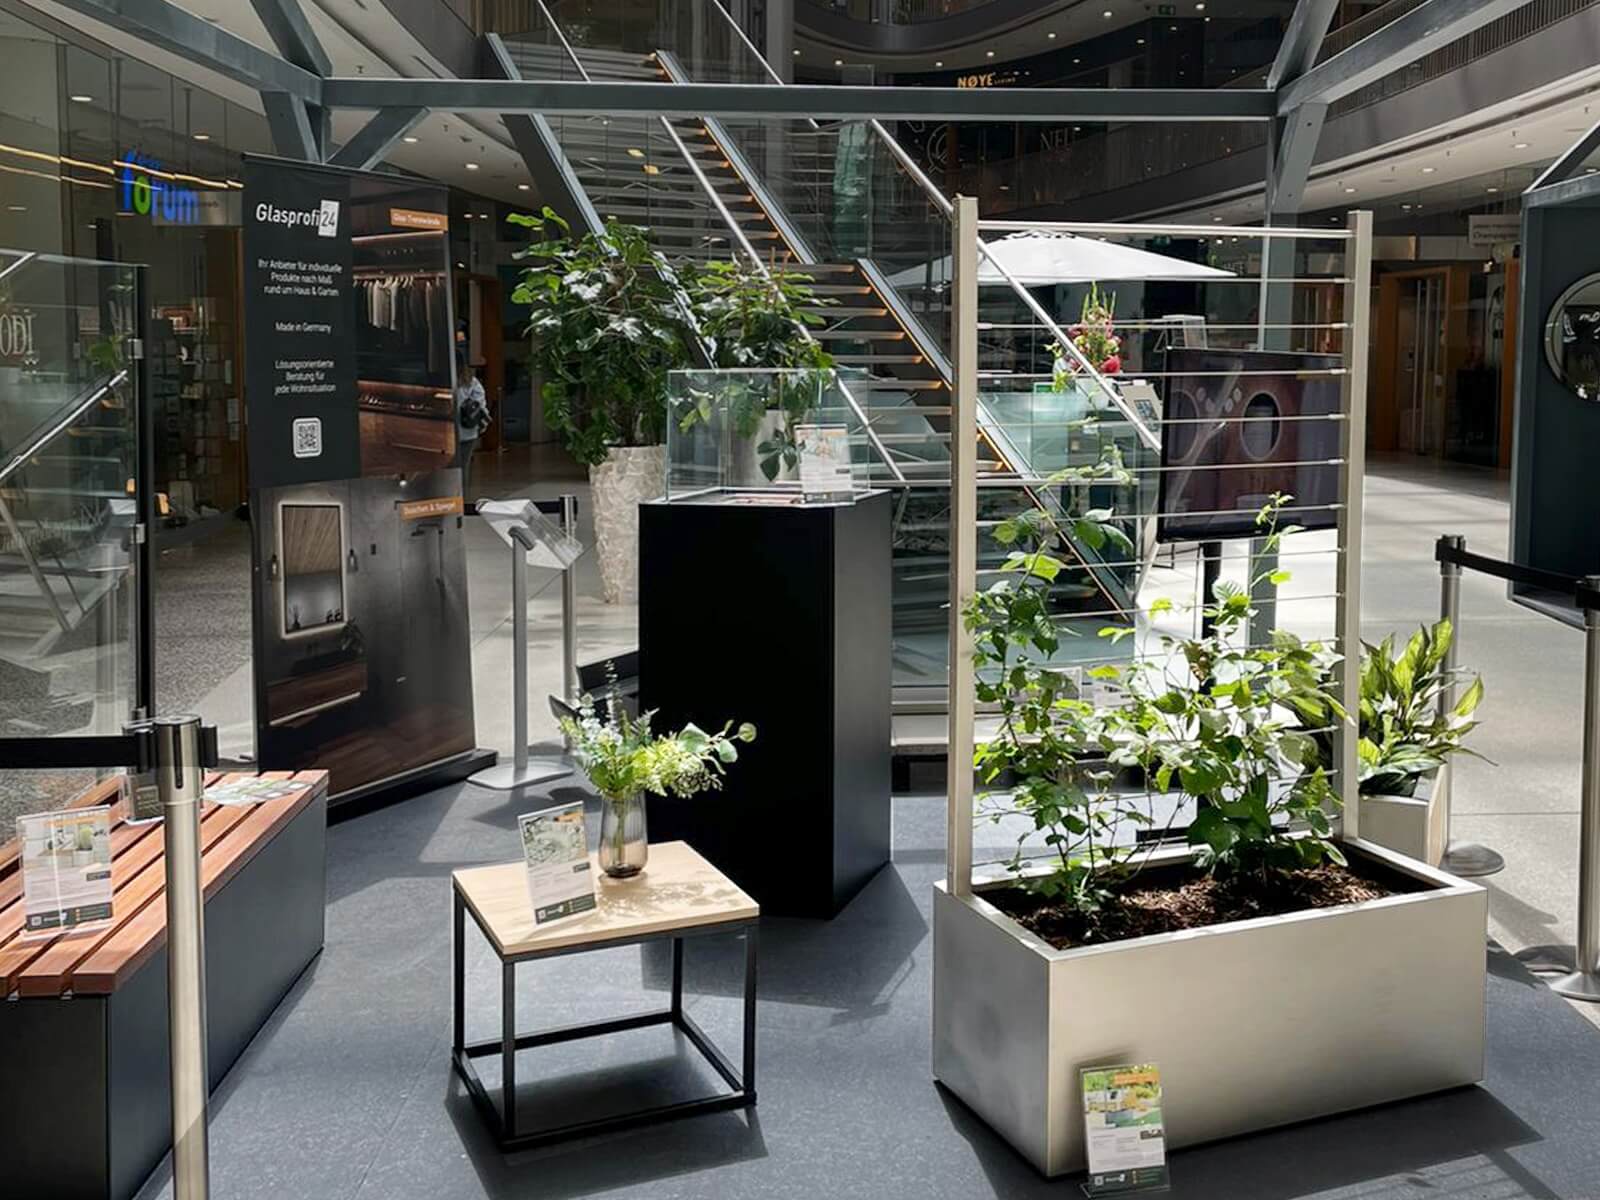 Ausstellung Glasprofi24 im stilwerk Düsseldorf mit Pflanzkasten, Gartenbank und Feuersäule